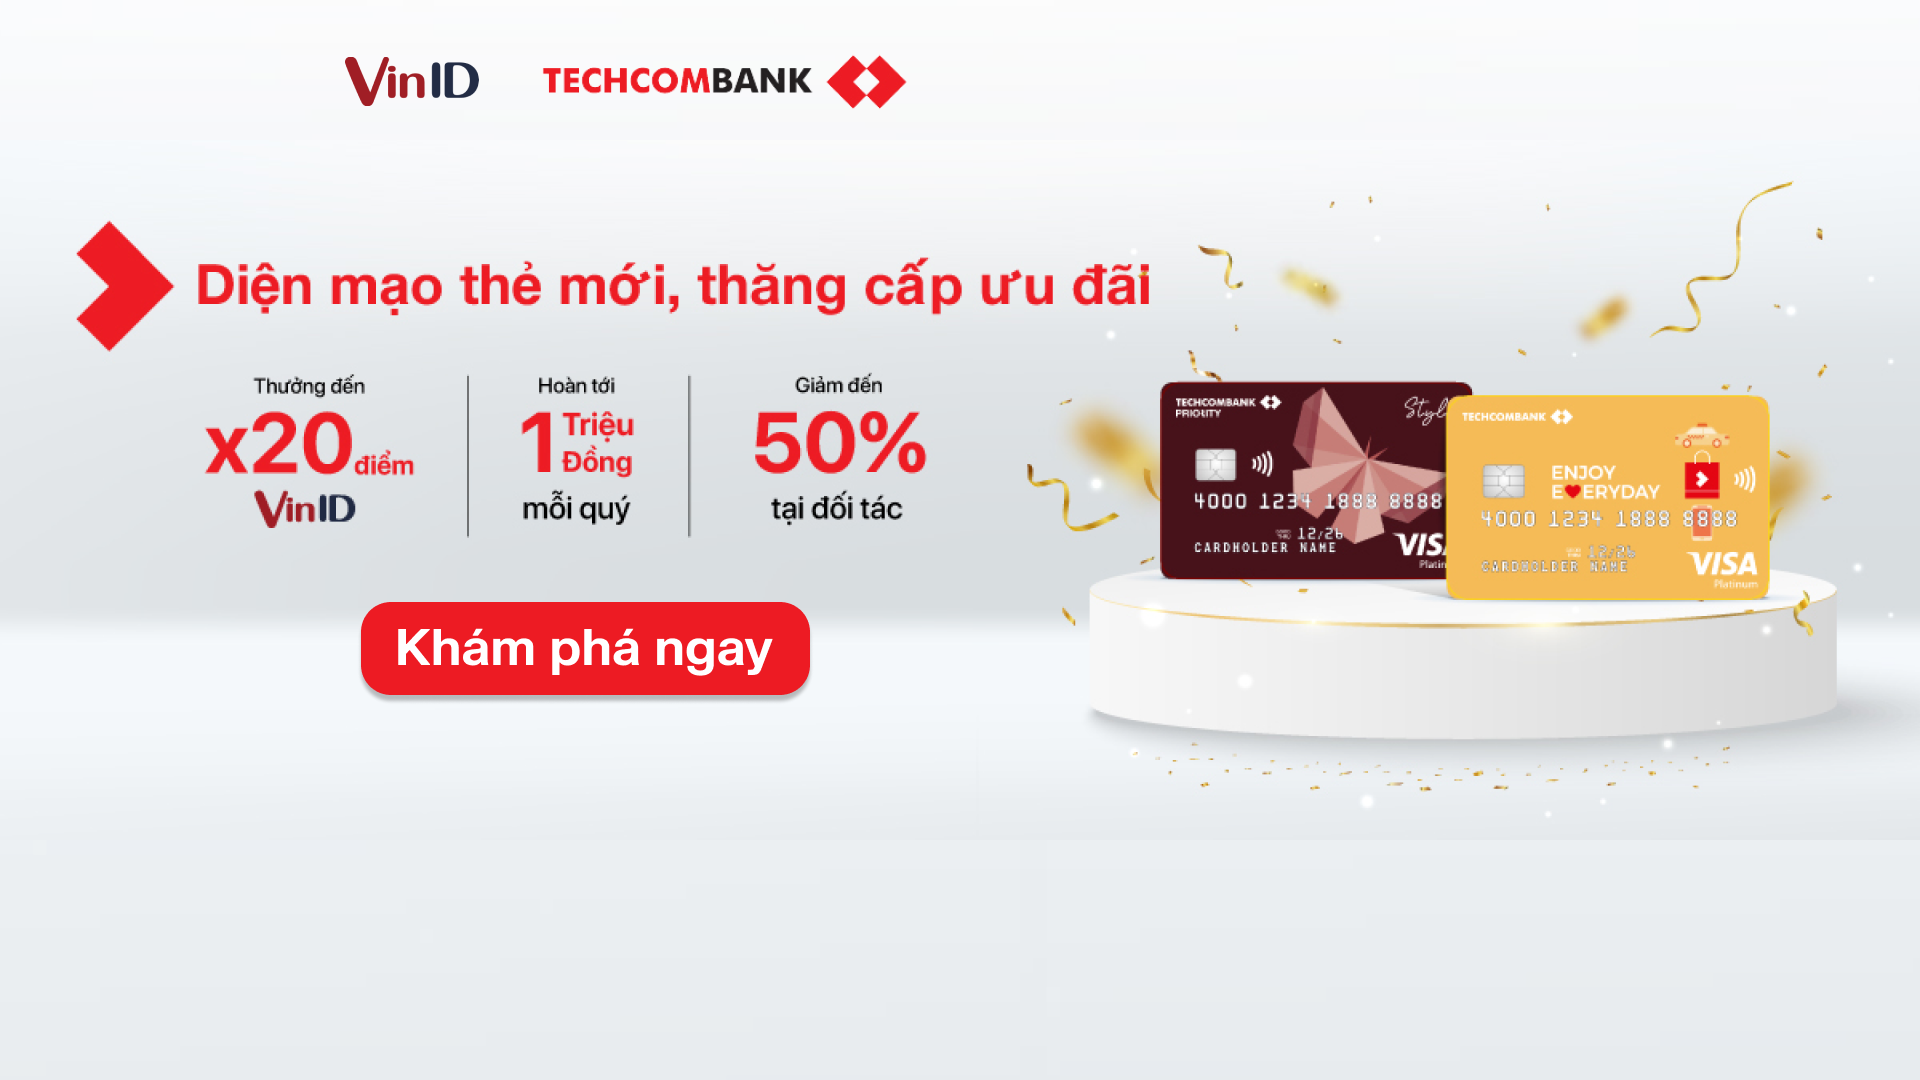 Lợi ích khi sử dụng thẻ tín dụng Techcombank Everyday là gì?
